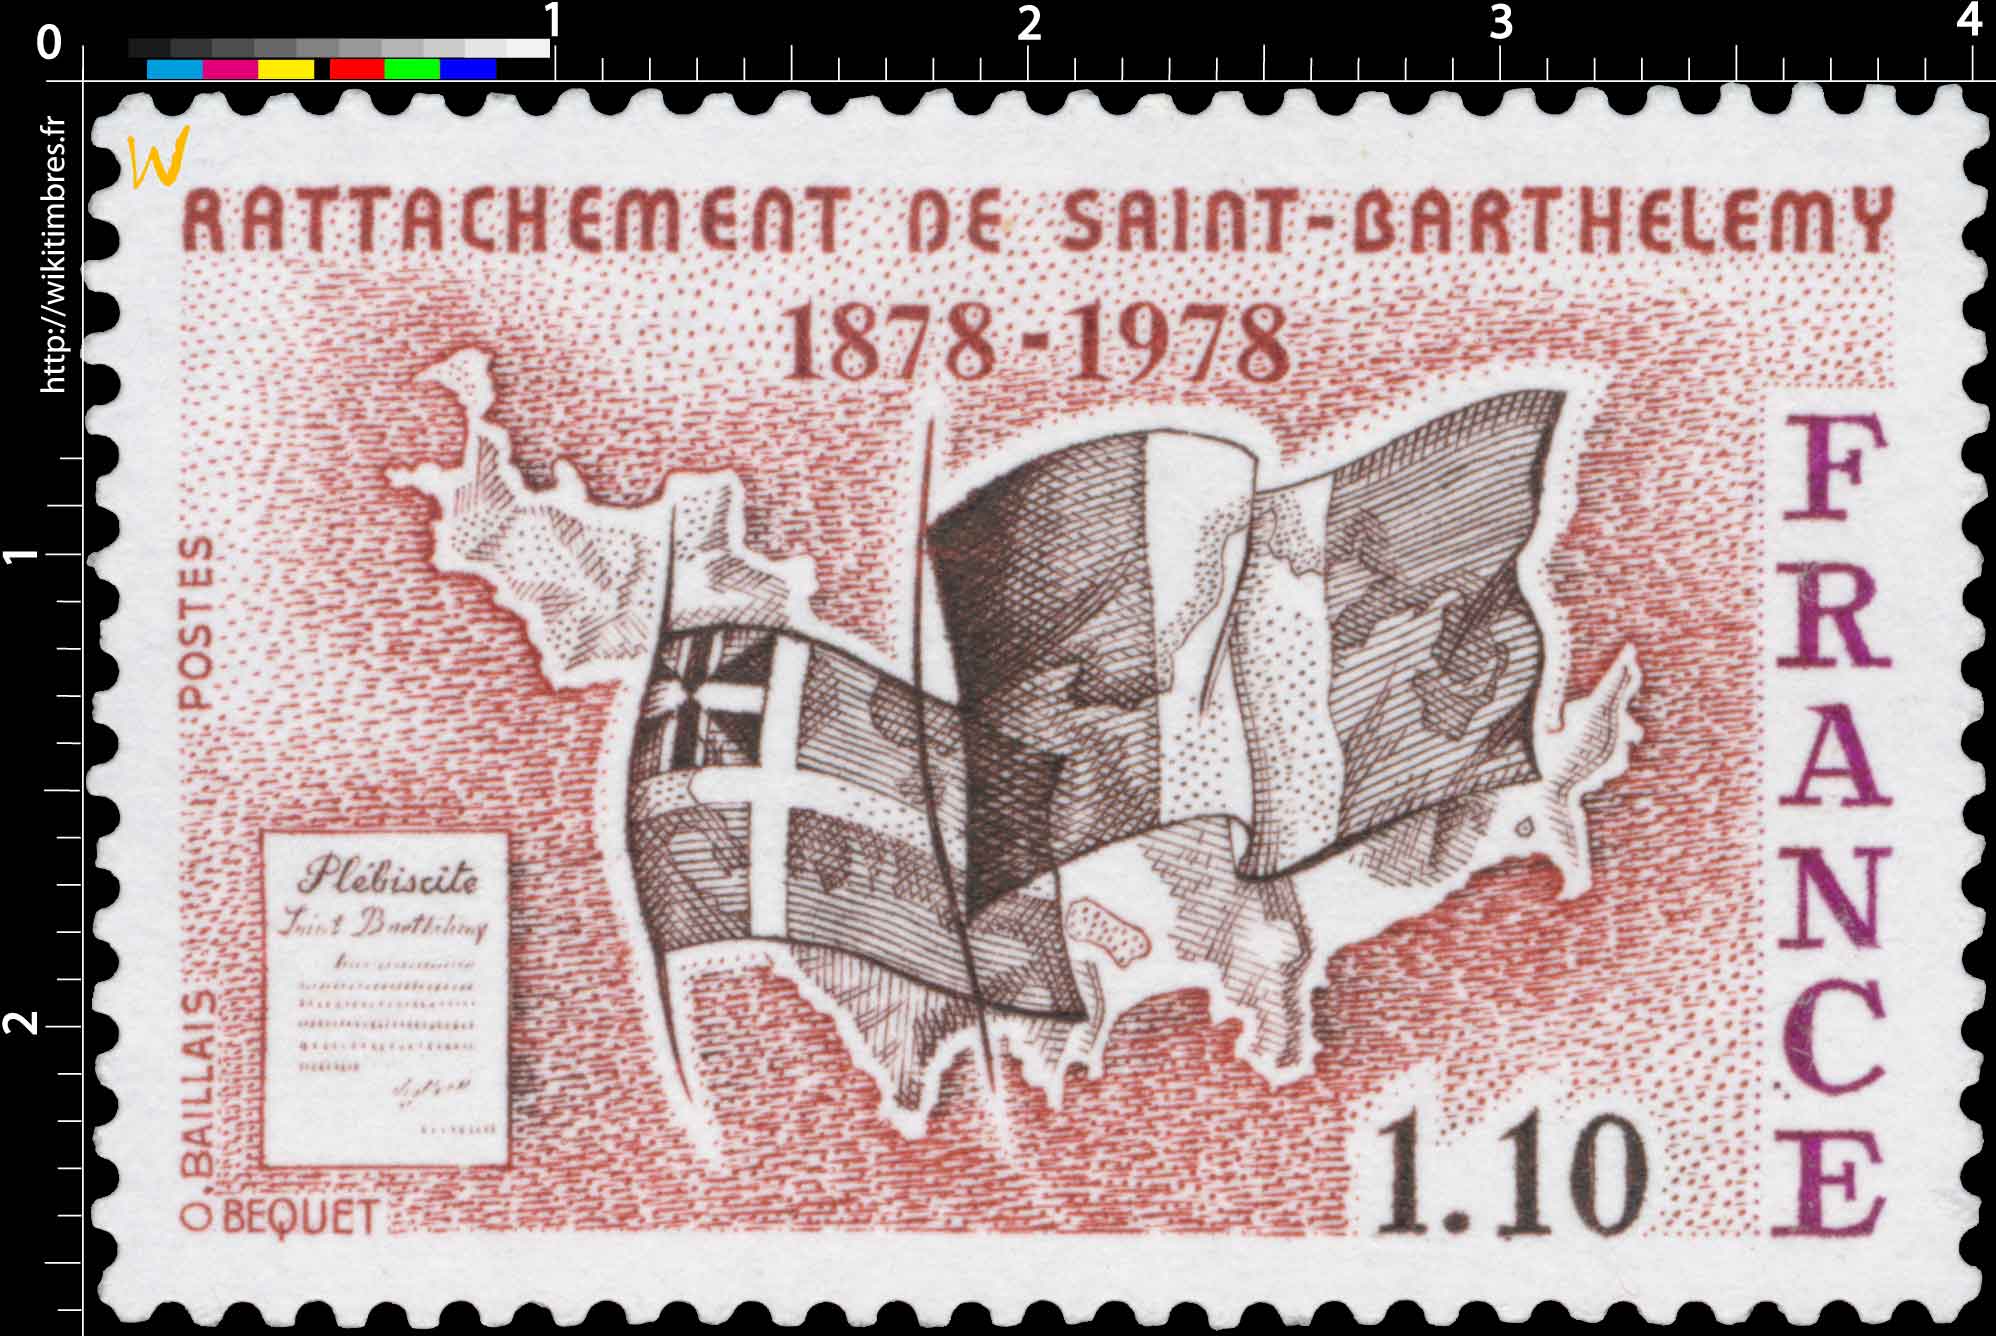 RATTACHEMENT DE SAINT-BARTHÉLEMY 1878-1978